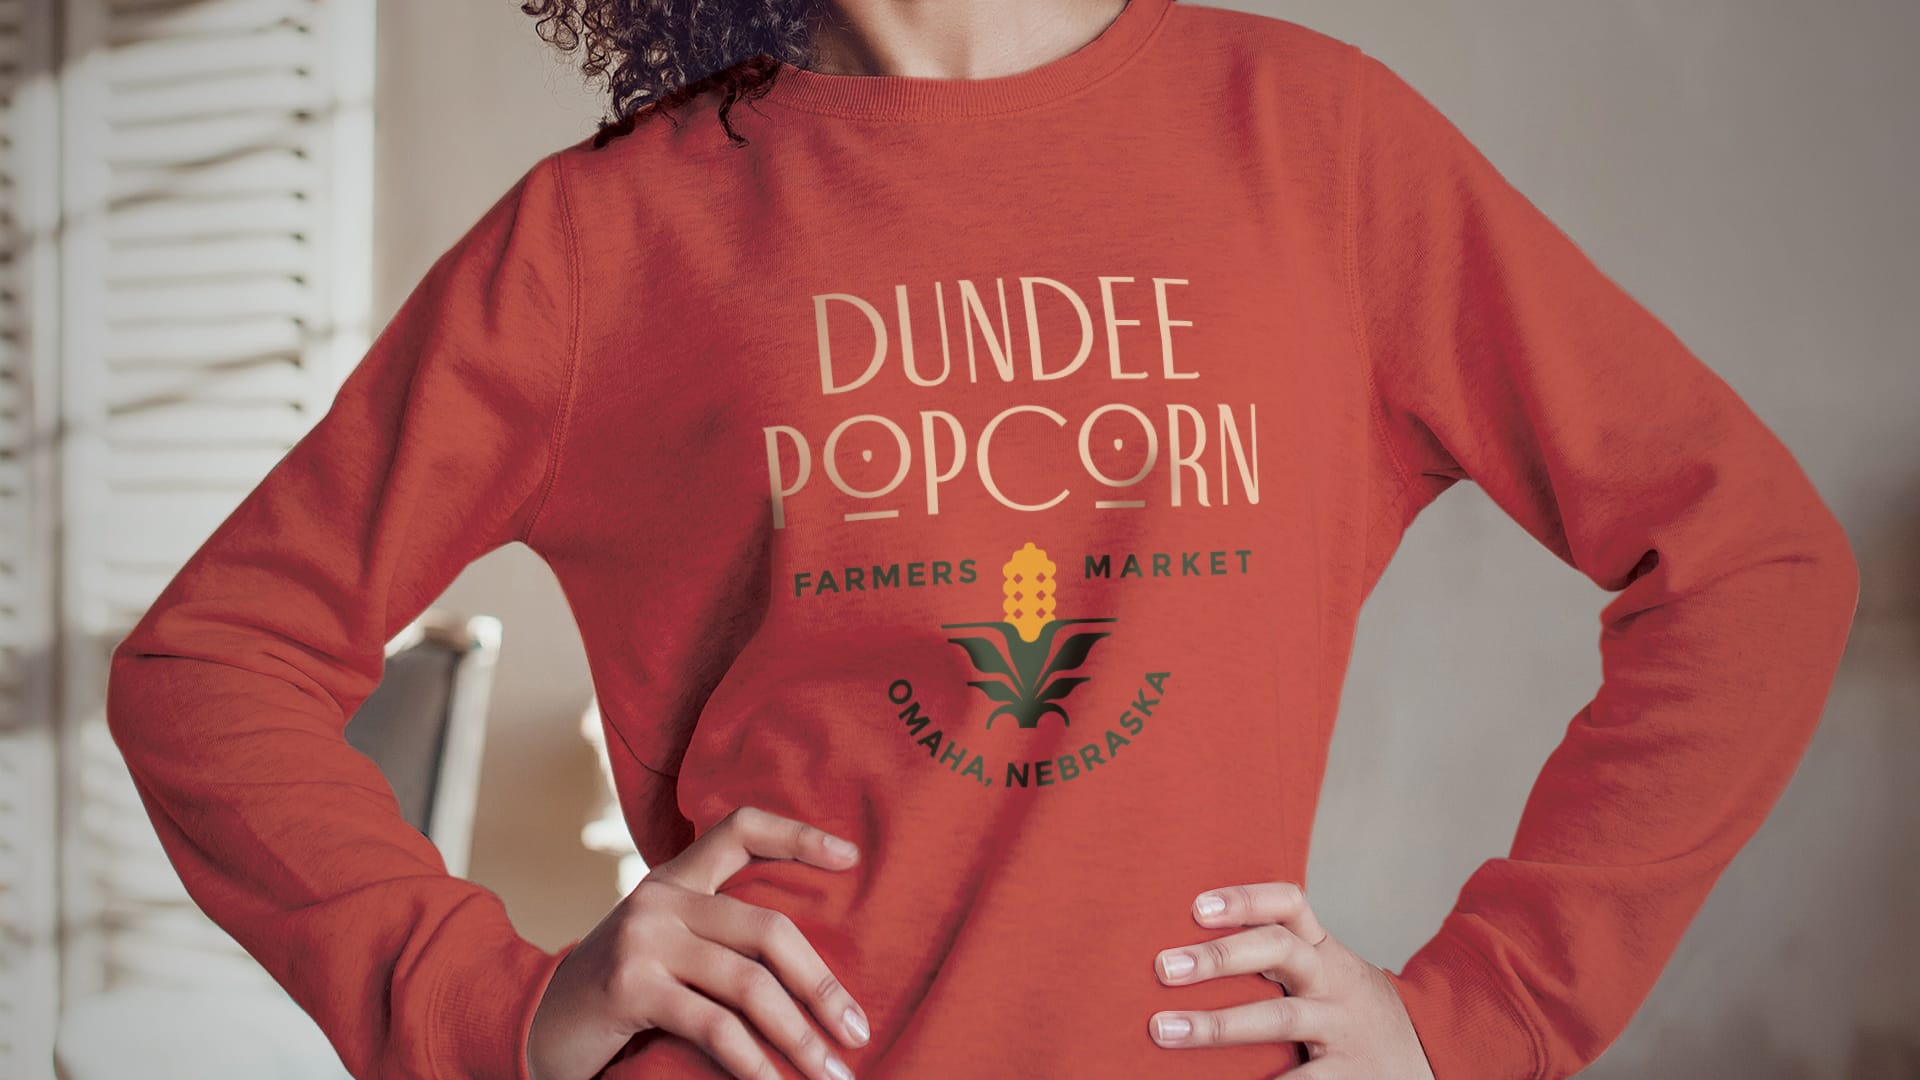 Dundee Popcorn Branding Sweatshirt Design